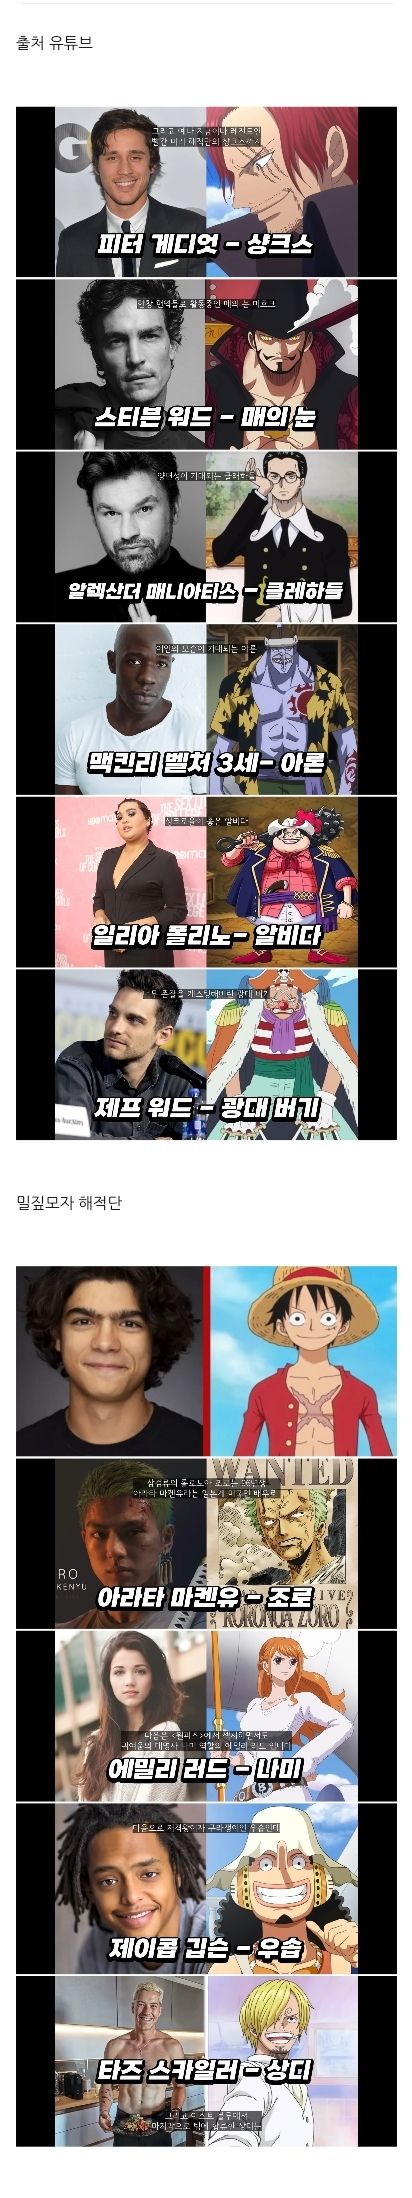 넷플릭스 원피스 실사판 배우 공개